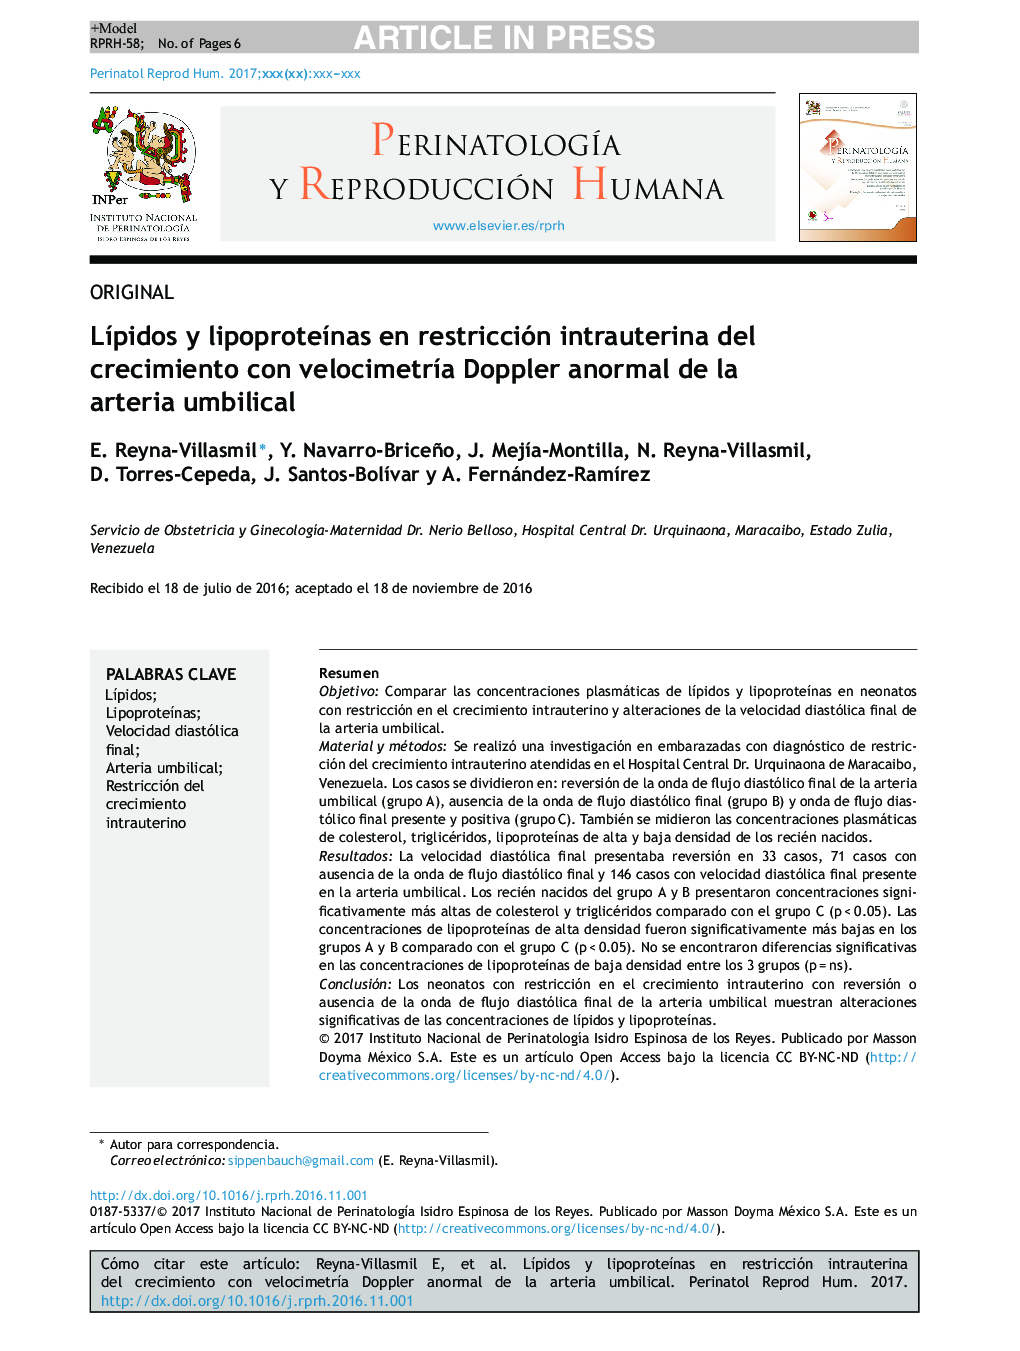 LÃ­pidos y lipoproteÃ­nas en restricción intrauterina del crecimiento con velocimetrÃ­a Doppler anormal de la arteria umbilical